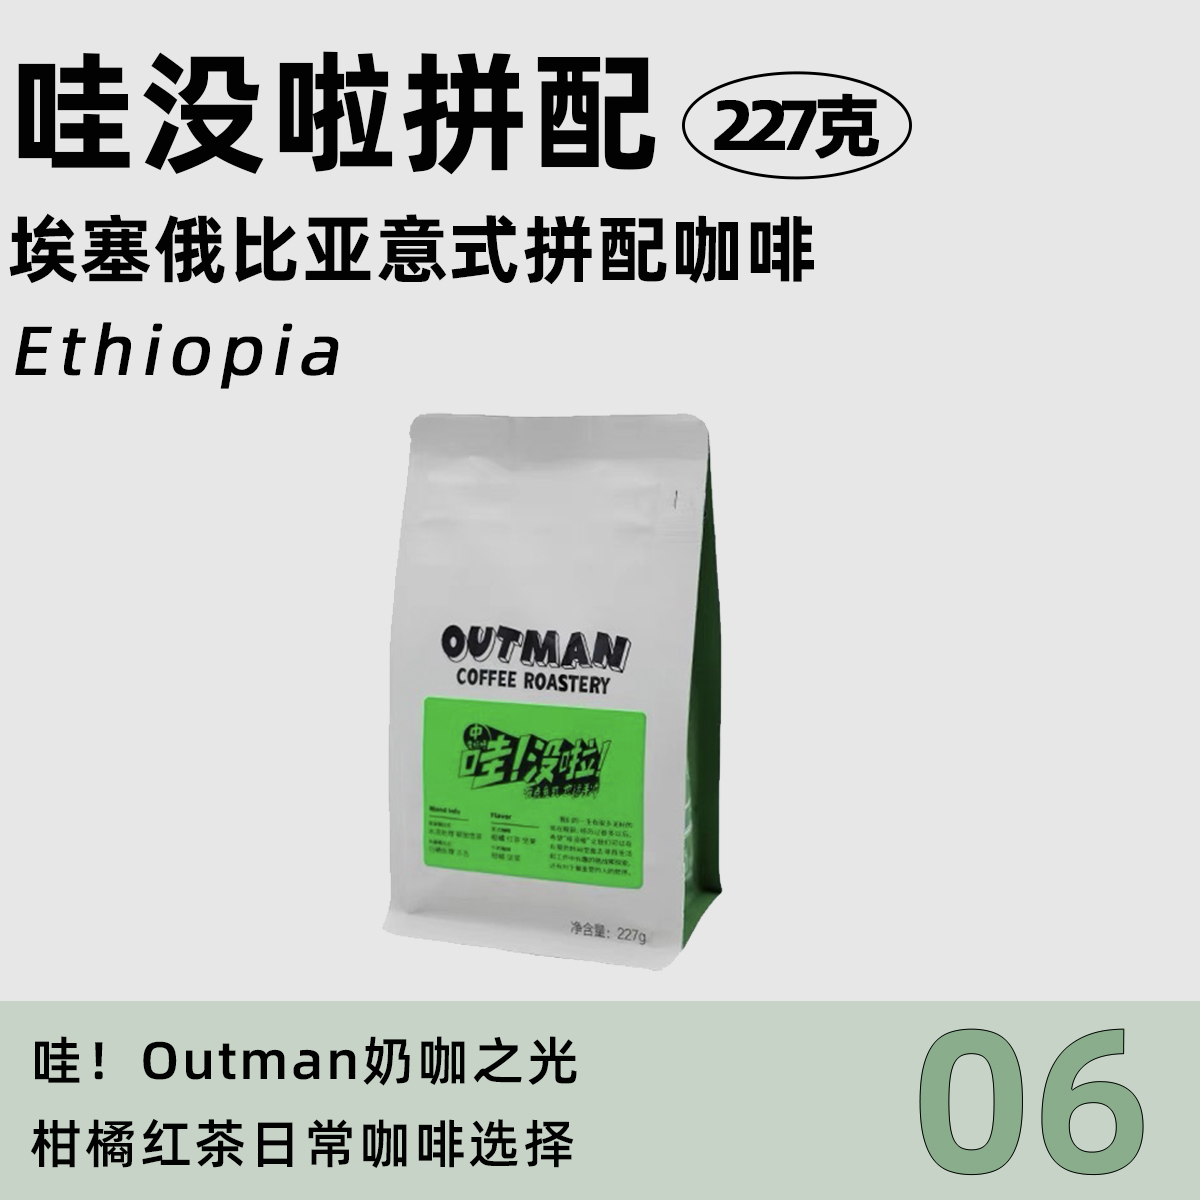 【奶咖之光】Outman06哇没啦埃塞拼配 美式拿铁中/深咖啡豆227克